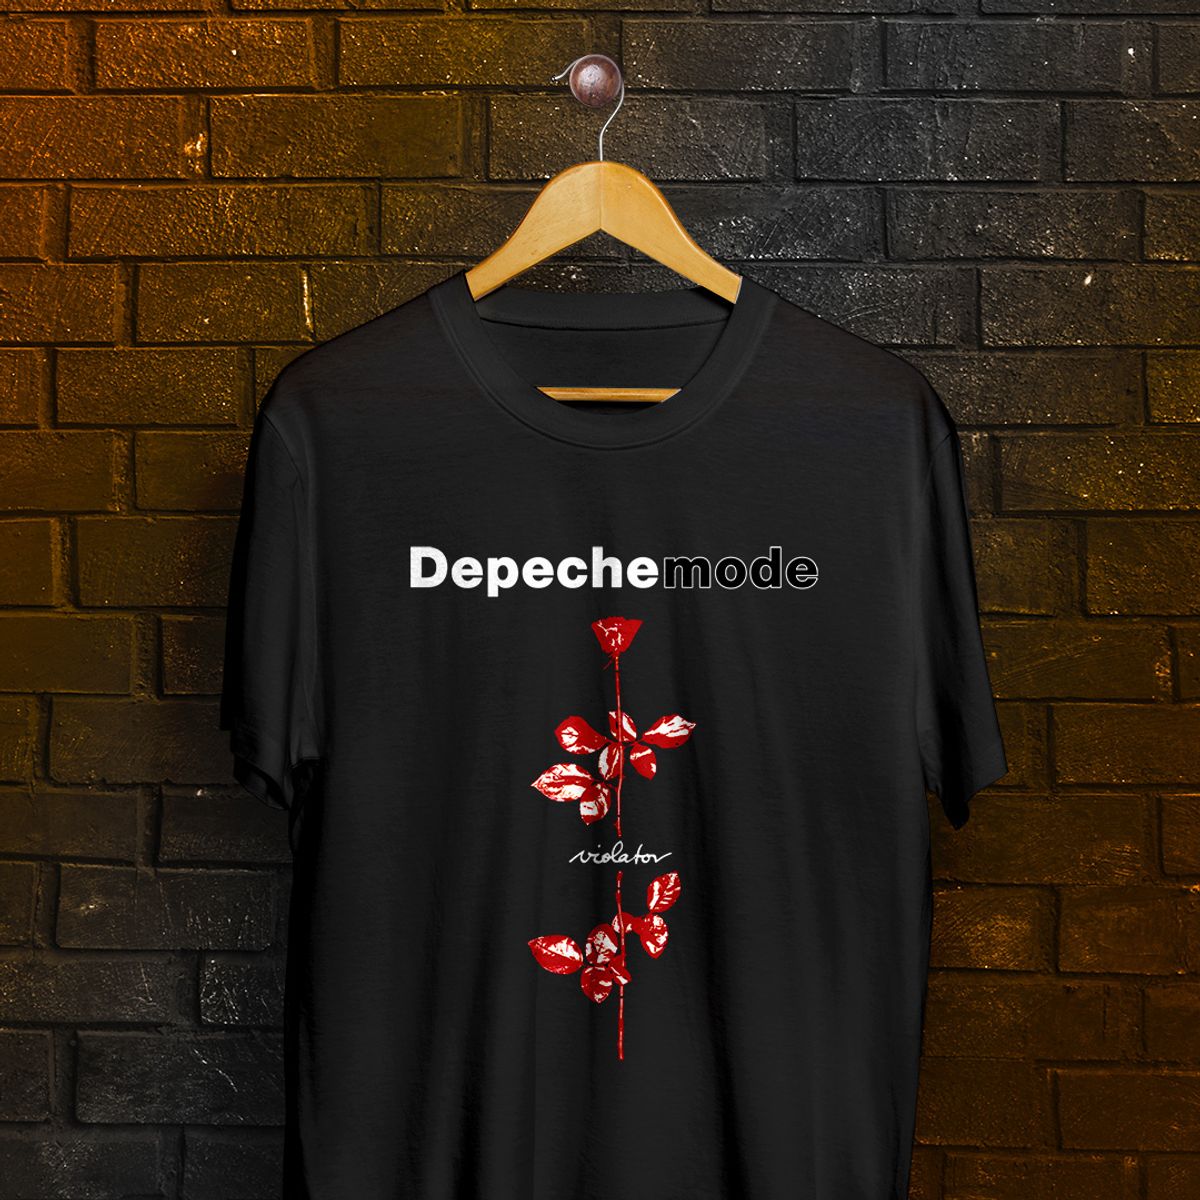 Nome do produto: Camiseta Depeche Mode - Violator